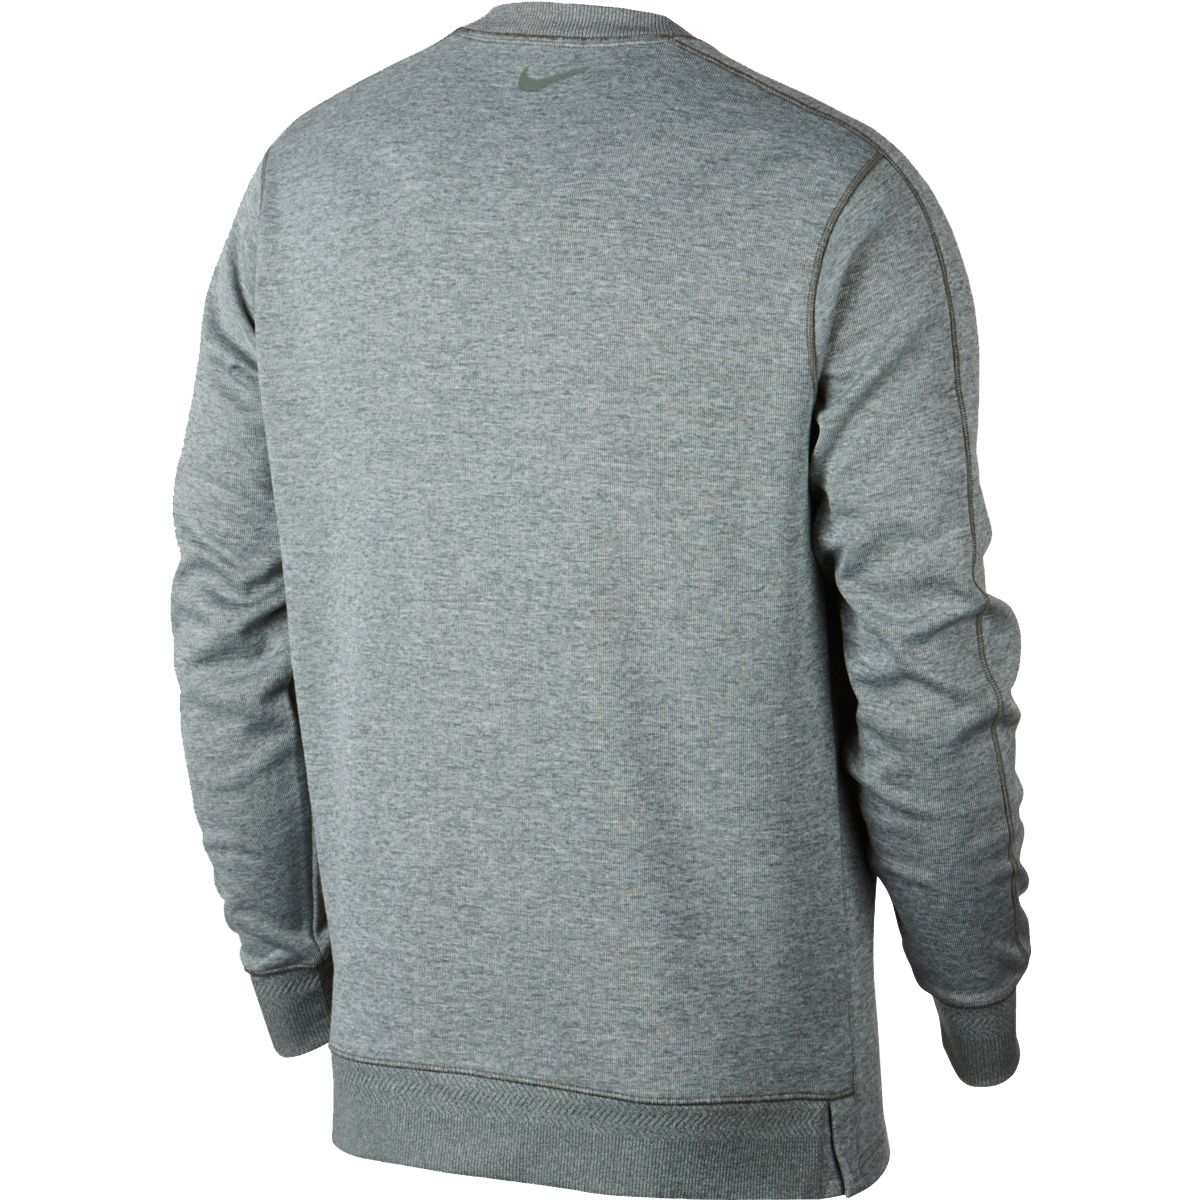 Nike Dry Top Crew Sweater AV4127 